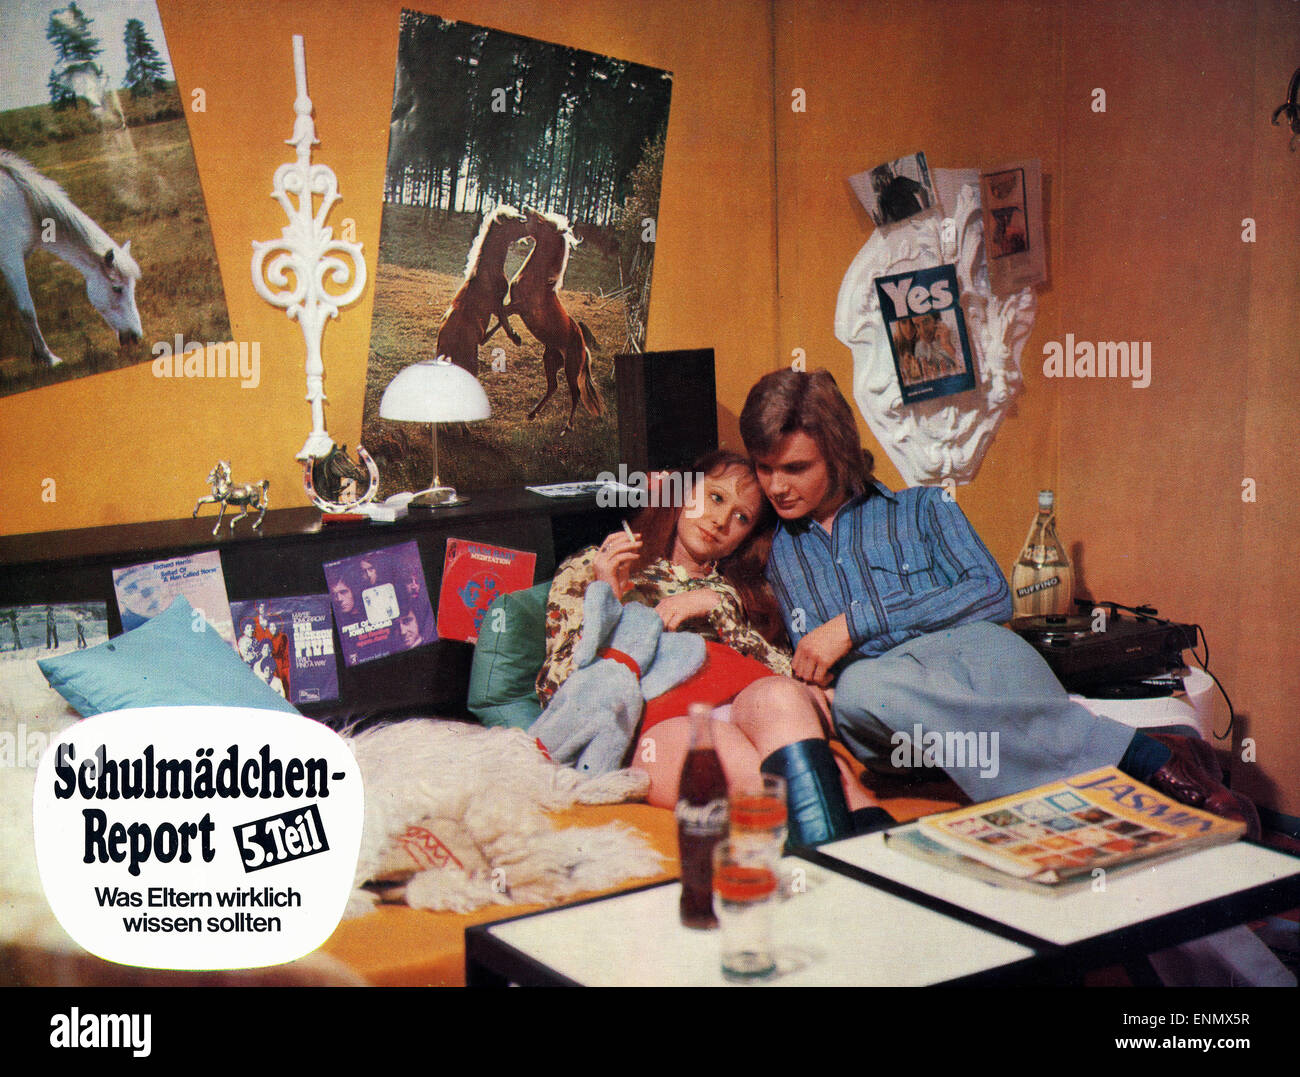 Schulmädchen-Report 5. Teil - Was Eltern wirklich wissen sollten, Deutschland 1973, Regie: Walter Boos, Ernst Hofbauer, Darstell Stock Photo